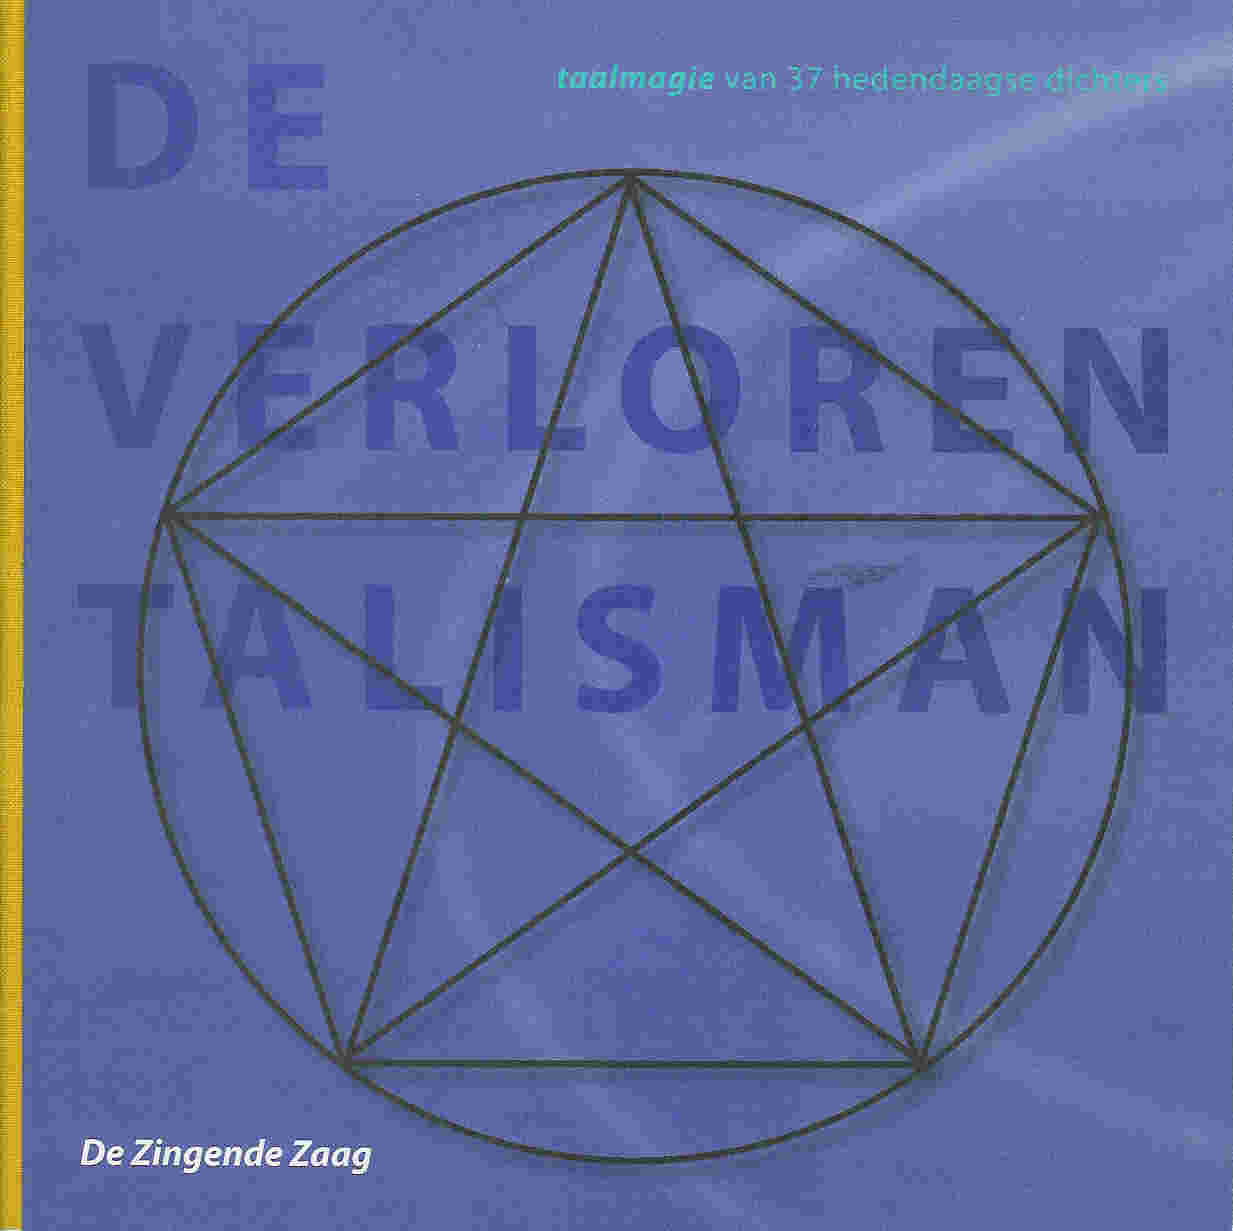 De verloren talisman, Uitgeverij De Zingende Zaag, Haarlem 2005